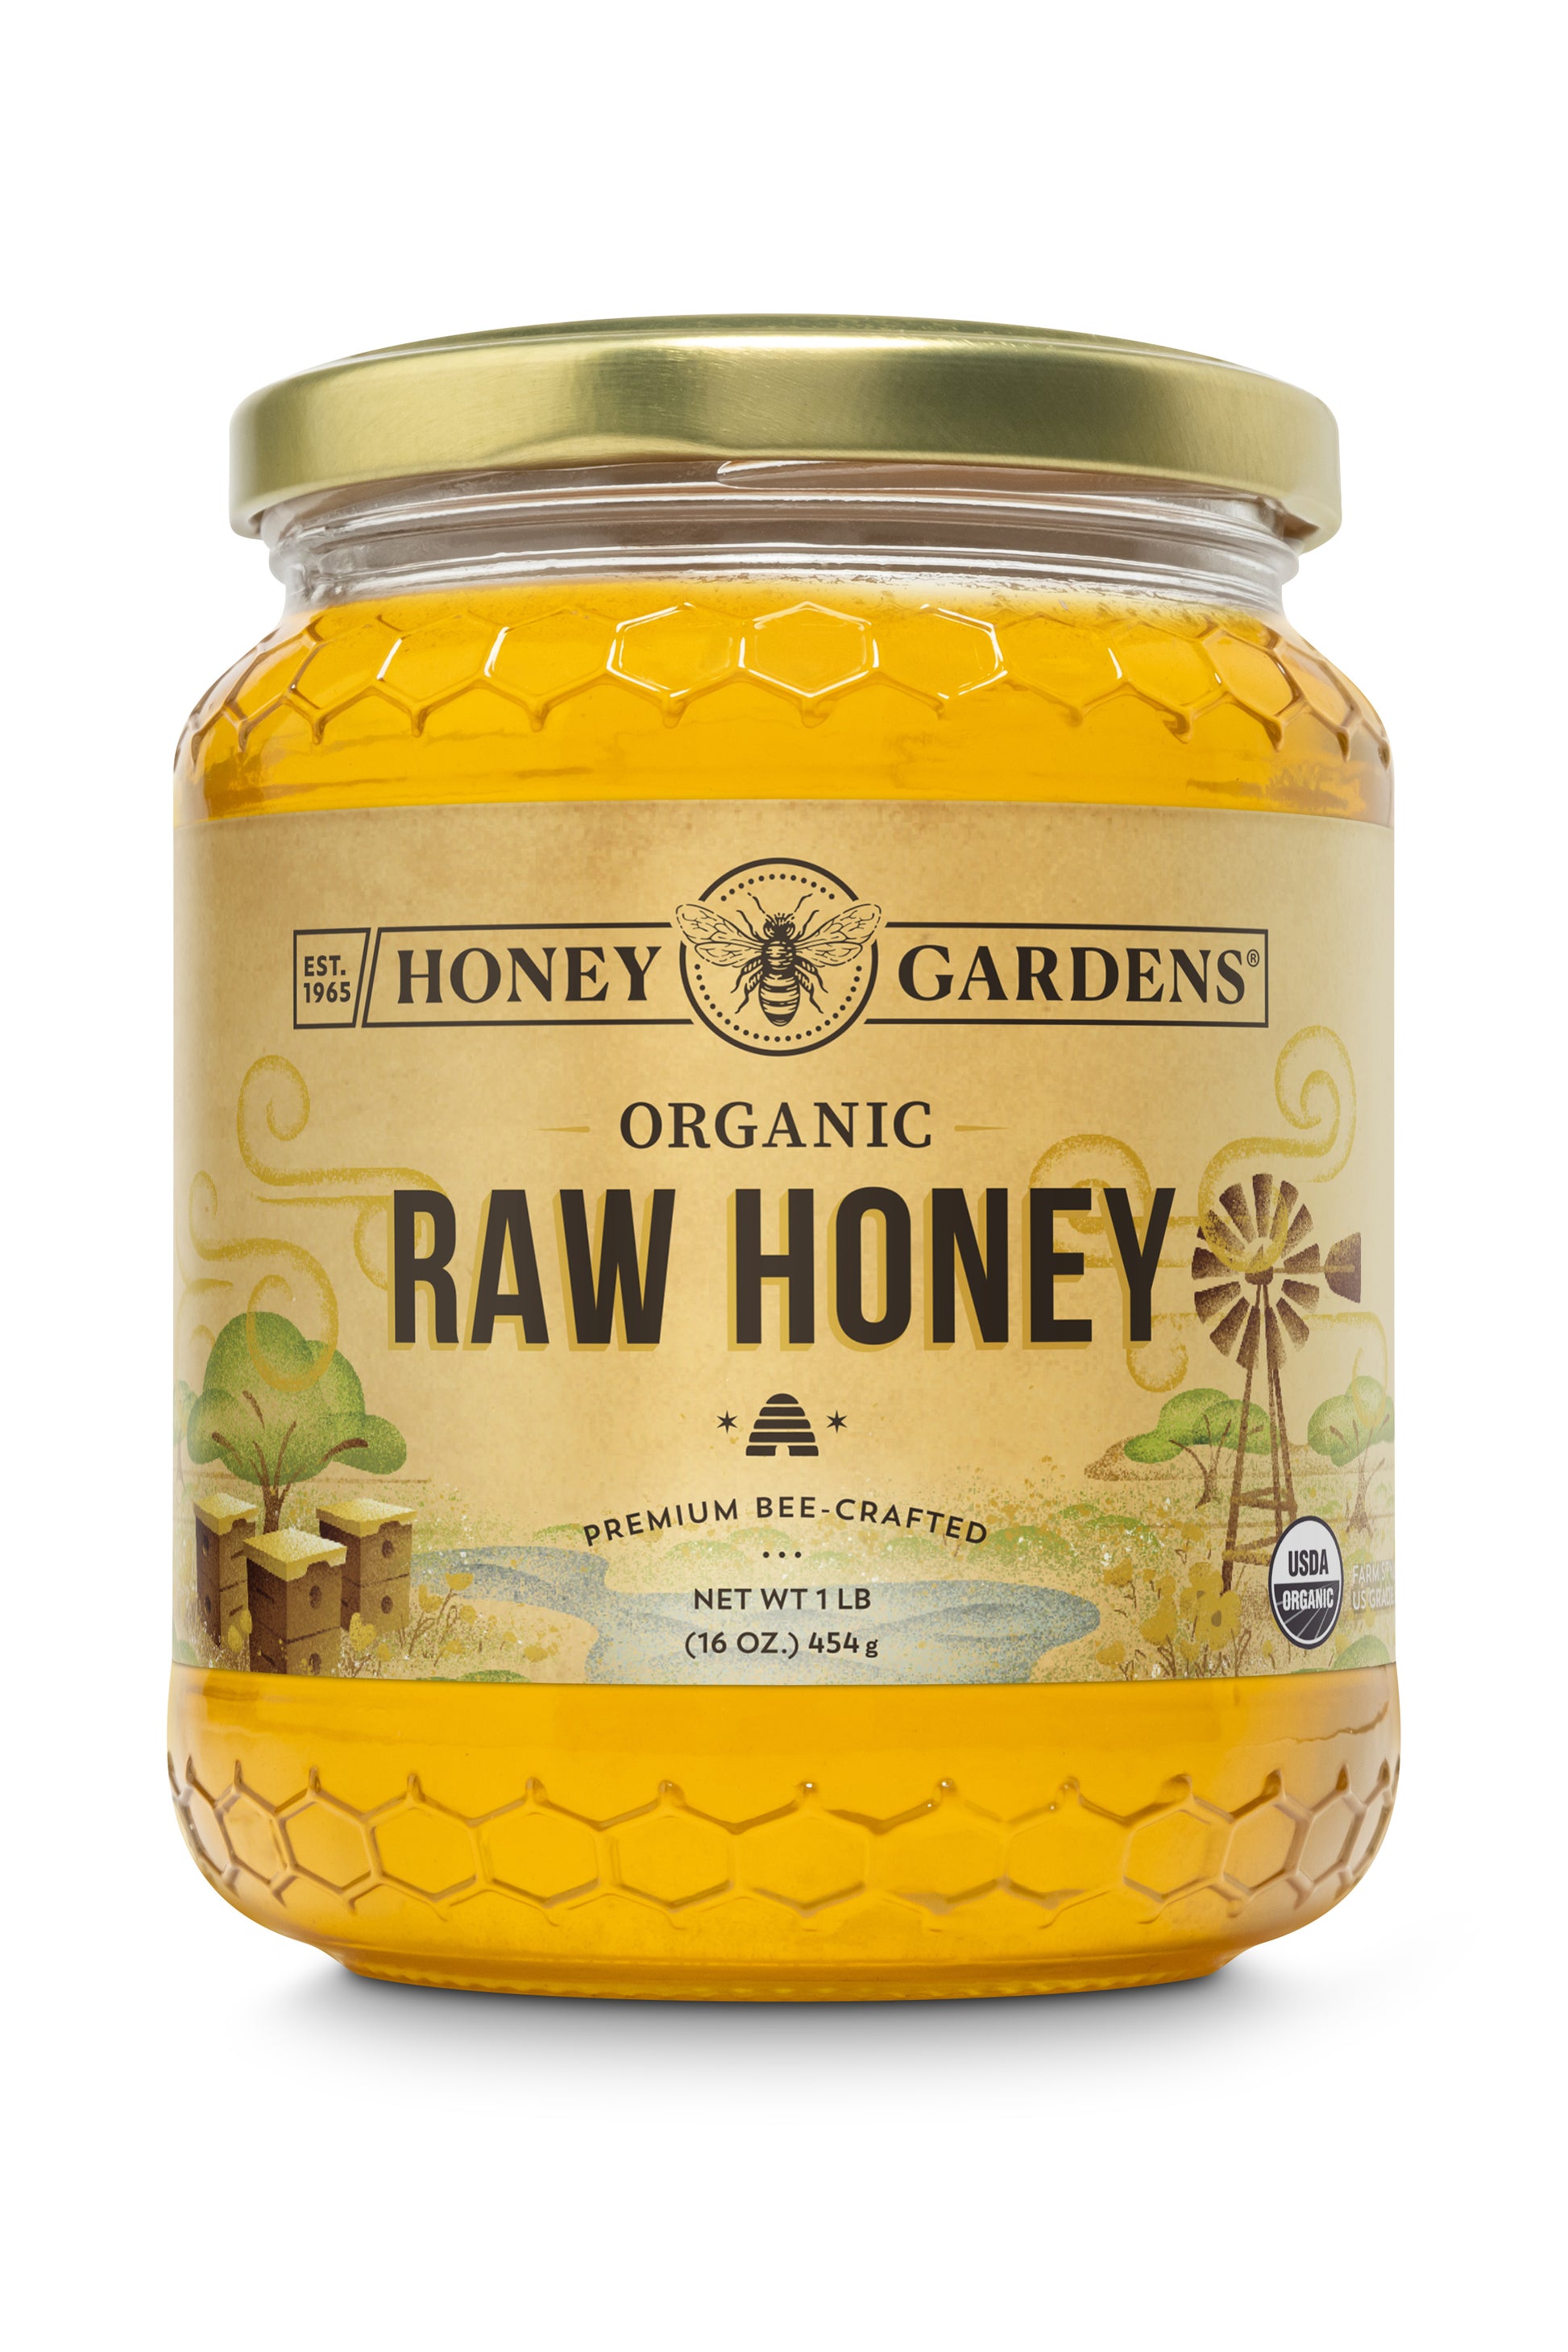 Raw Honey  Organic – Honey Gardens